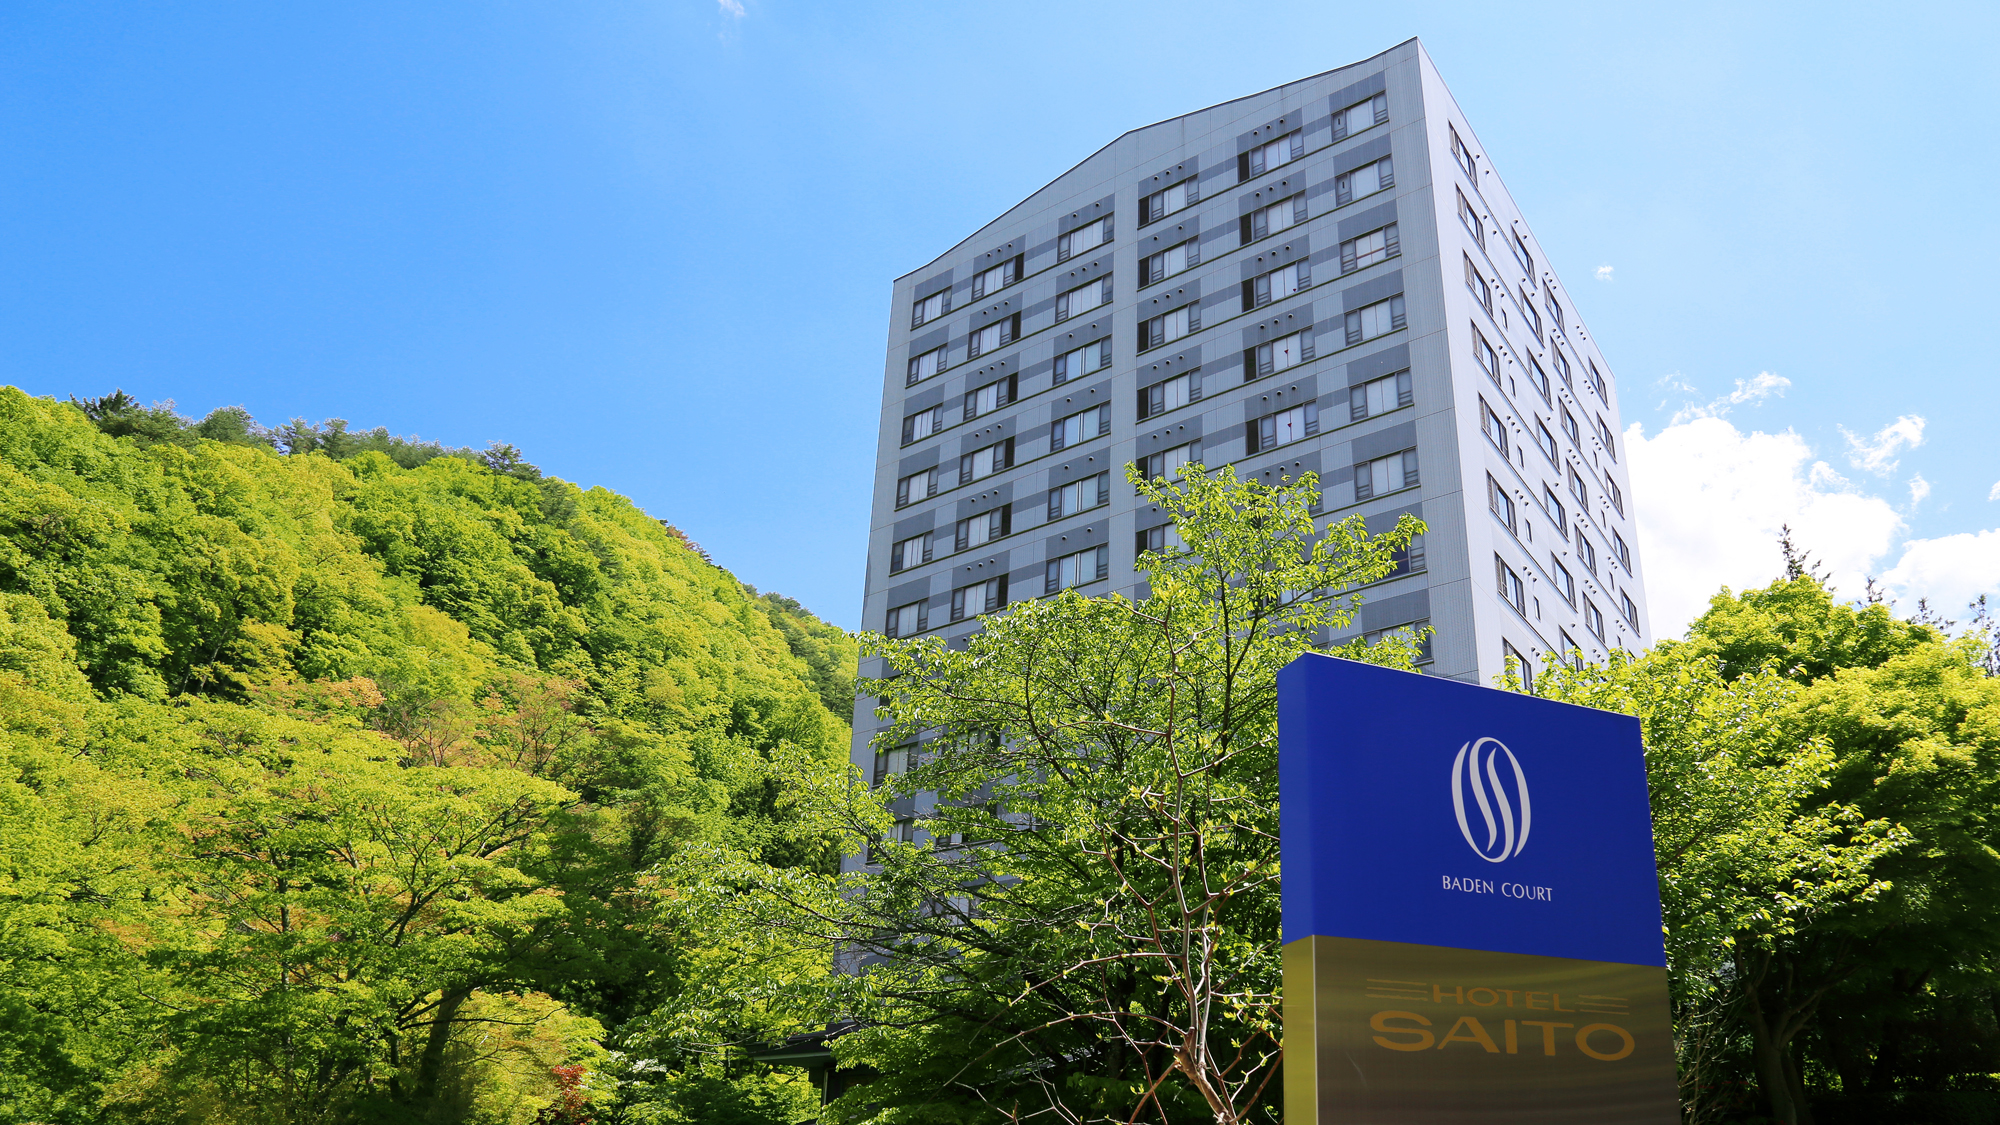 斎藤ホテル